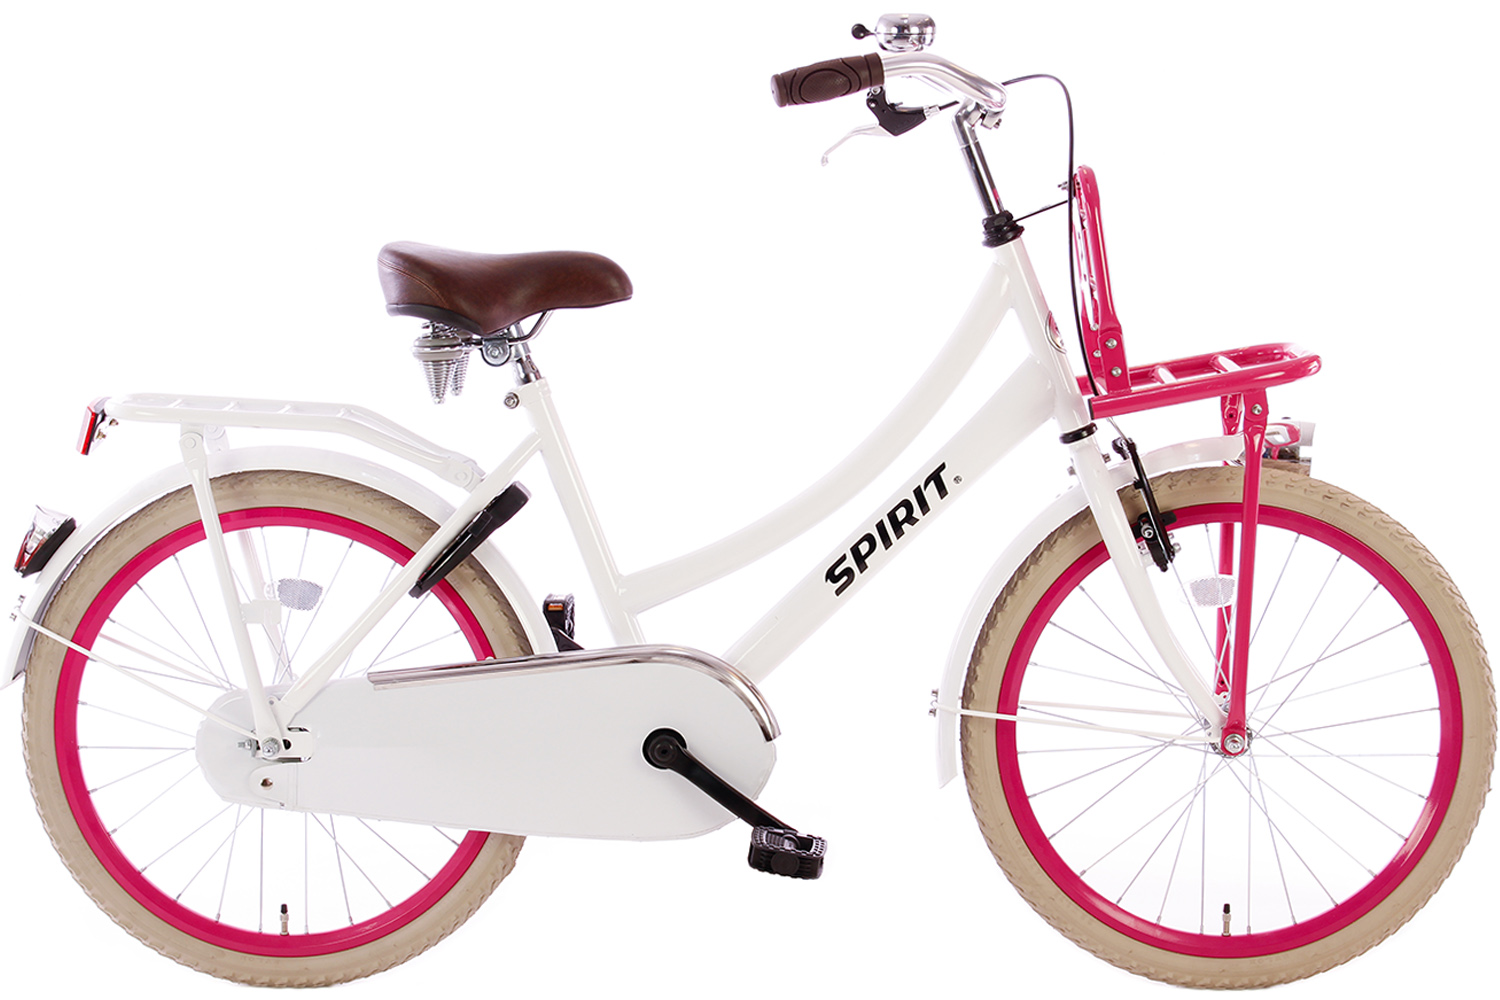 Fabrikant genoeg Dertig Spirit Cargo Wit-Roze Meisjesfiets 22 inch - Meisjesfiets | City-Bikes.nl